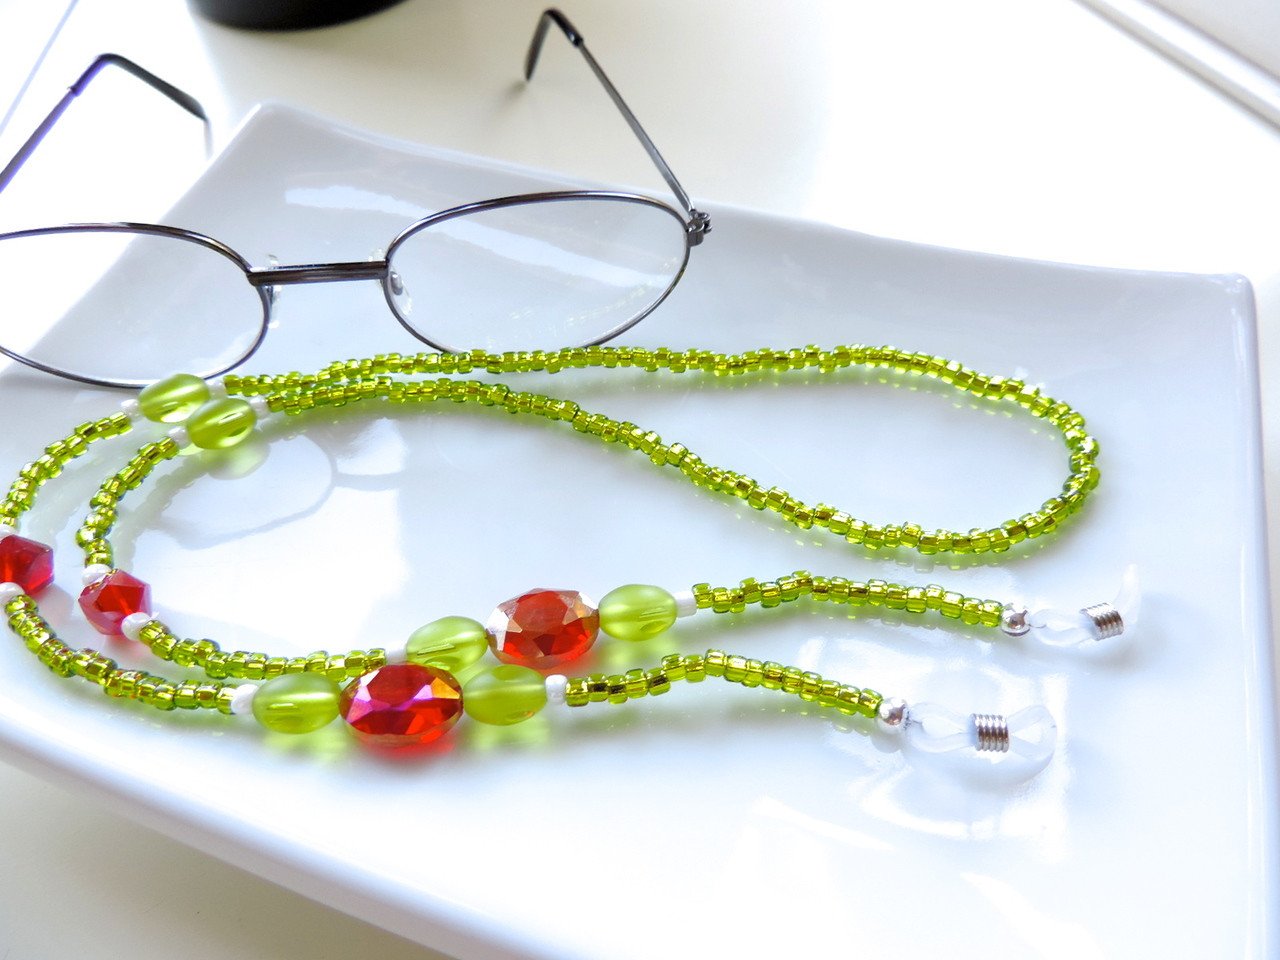 Bead Eyeglass Holders Beaded Glasses Chain Beaded Eyeglass Holder